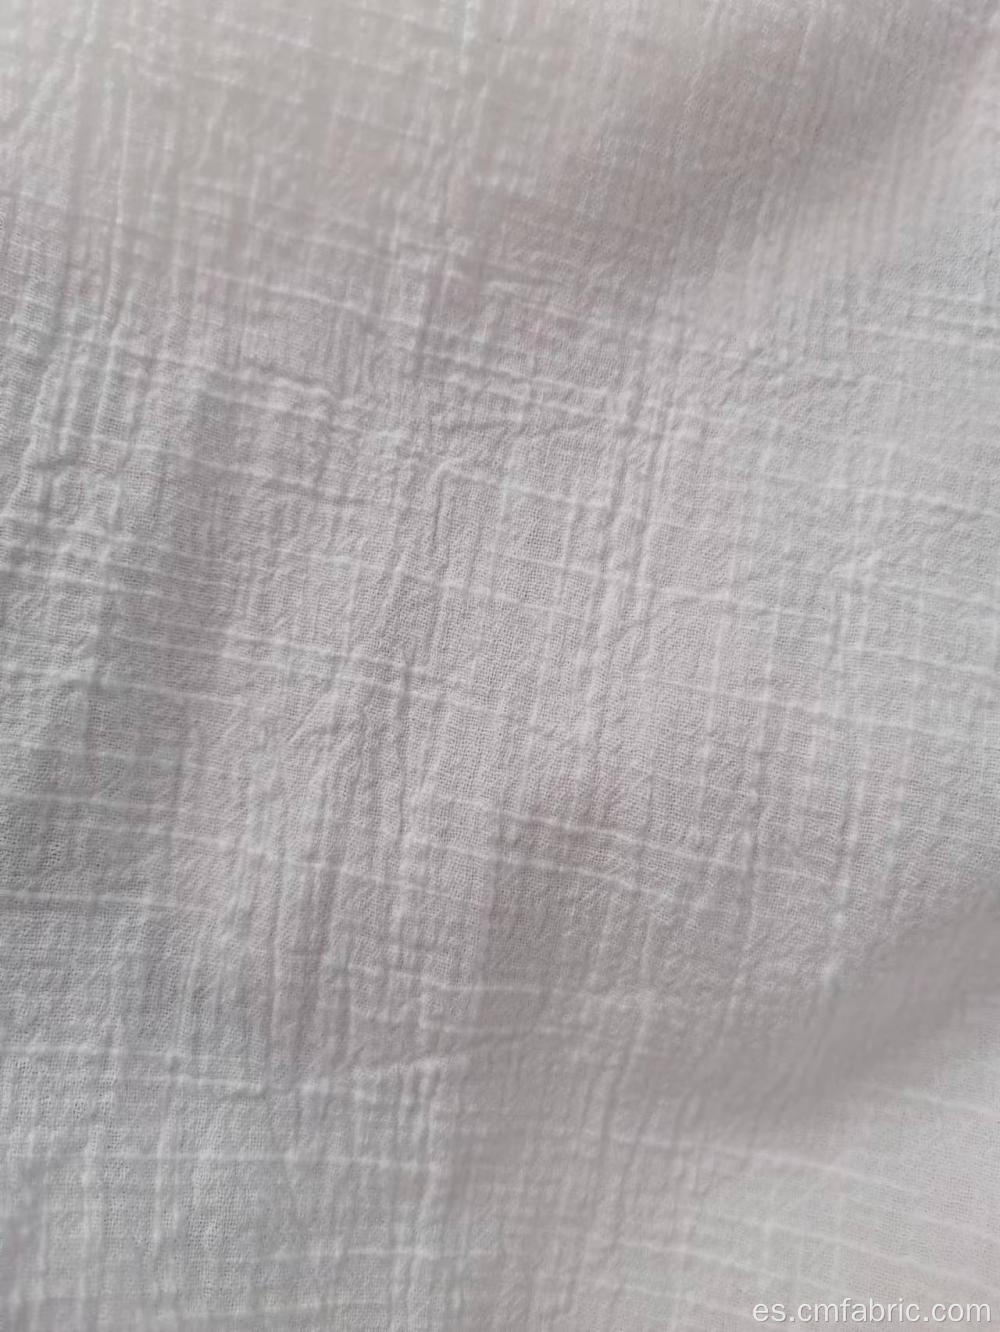 Tela de crepé con textura tejida de algodón 100% algodón de algodón